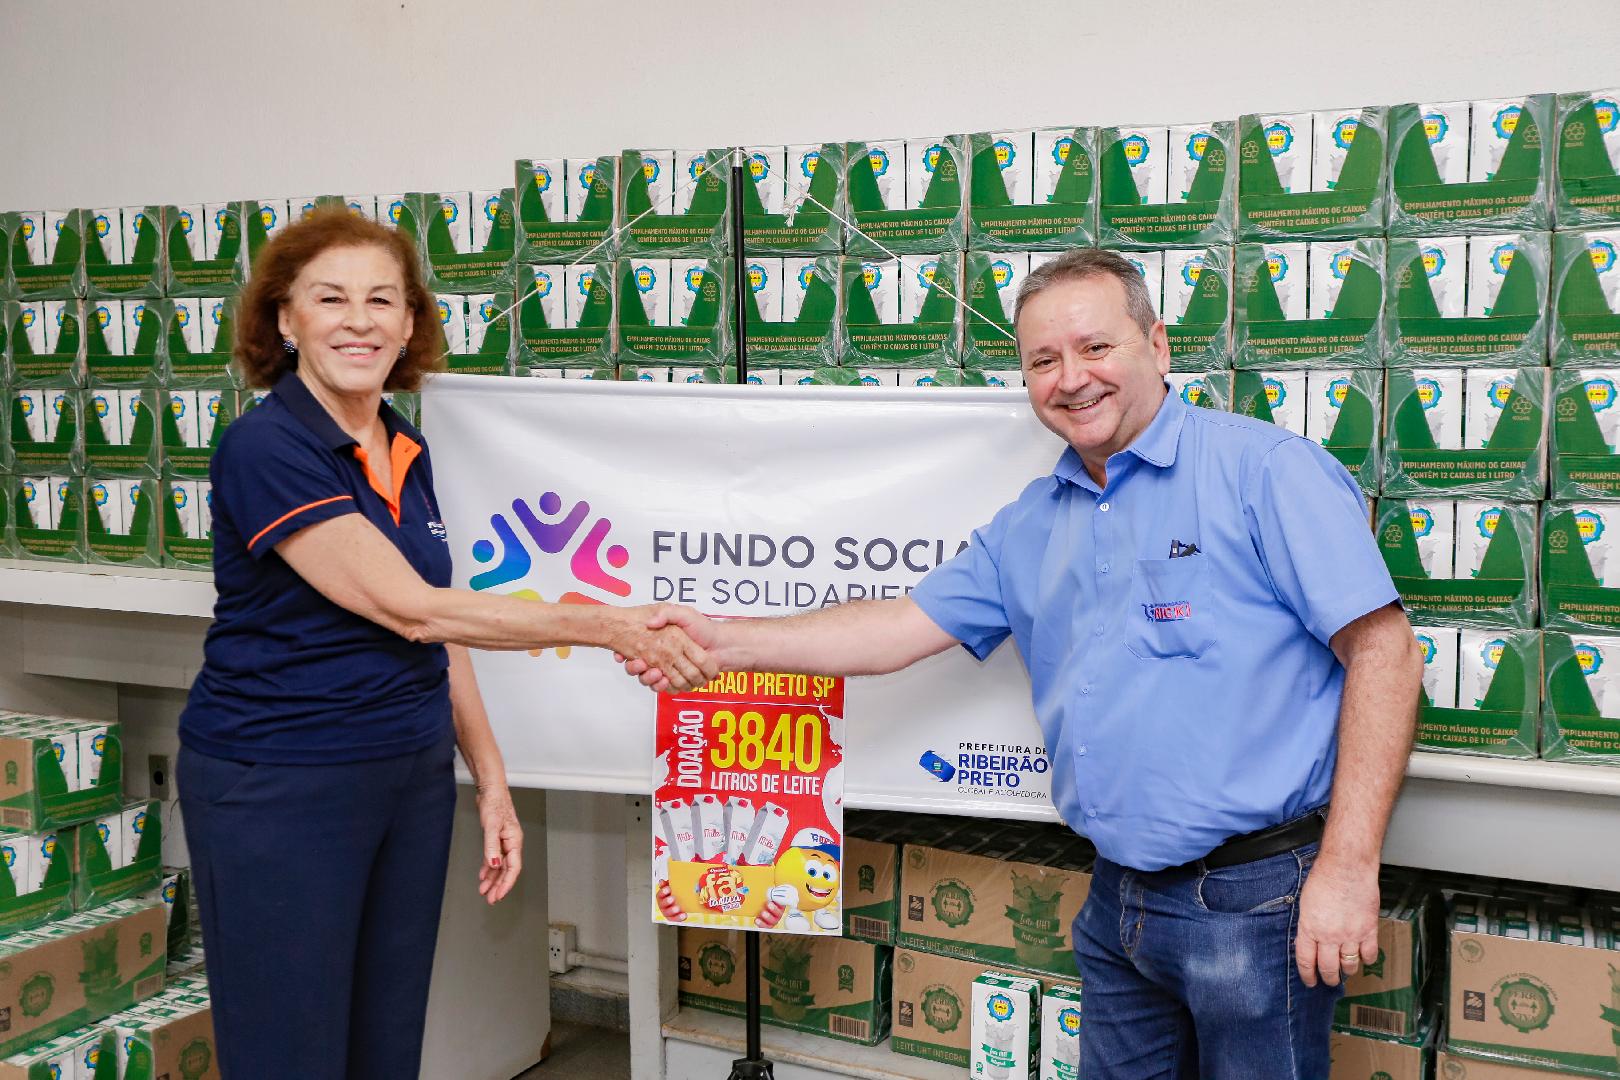 Fundo Social de Solidariedade recebe doação de 3.840 litros de leite